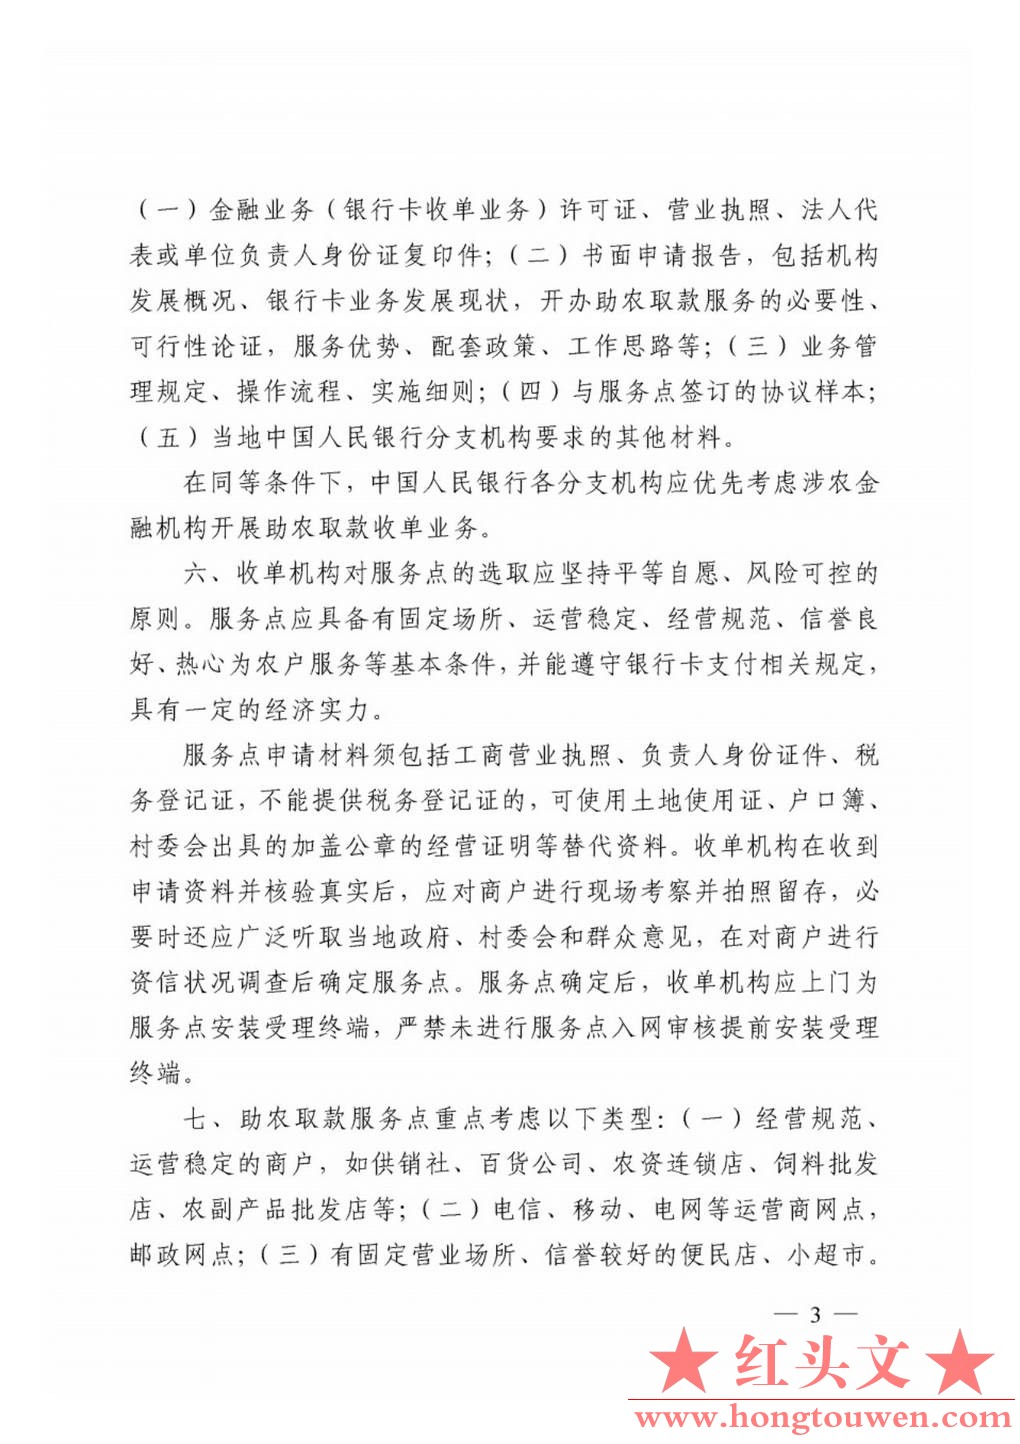 银发[2011]177号-中国人民银行关于推广银行卡助农取款服务的通知_Page3.jpg.jpg